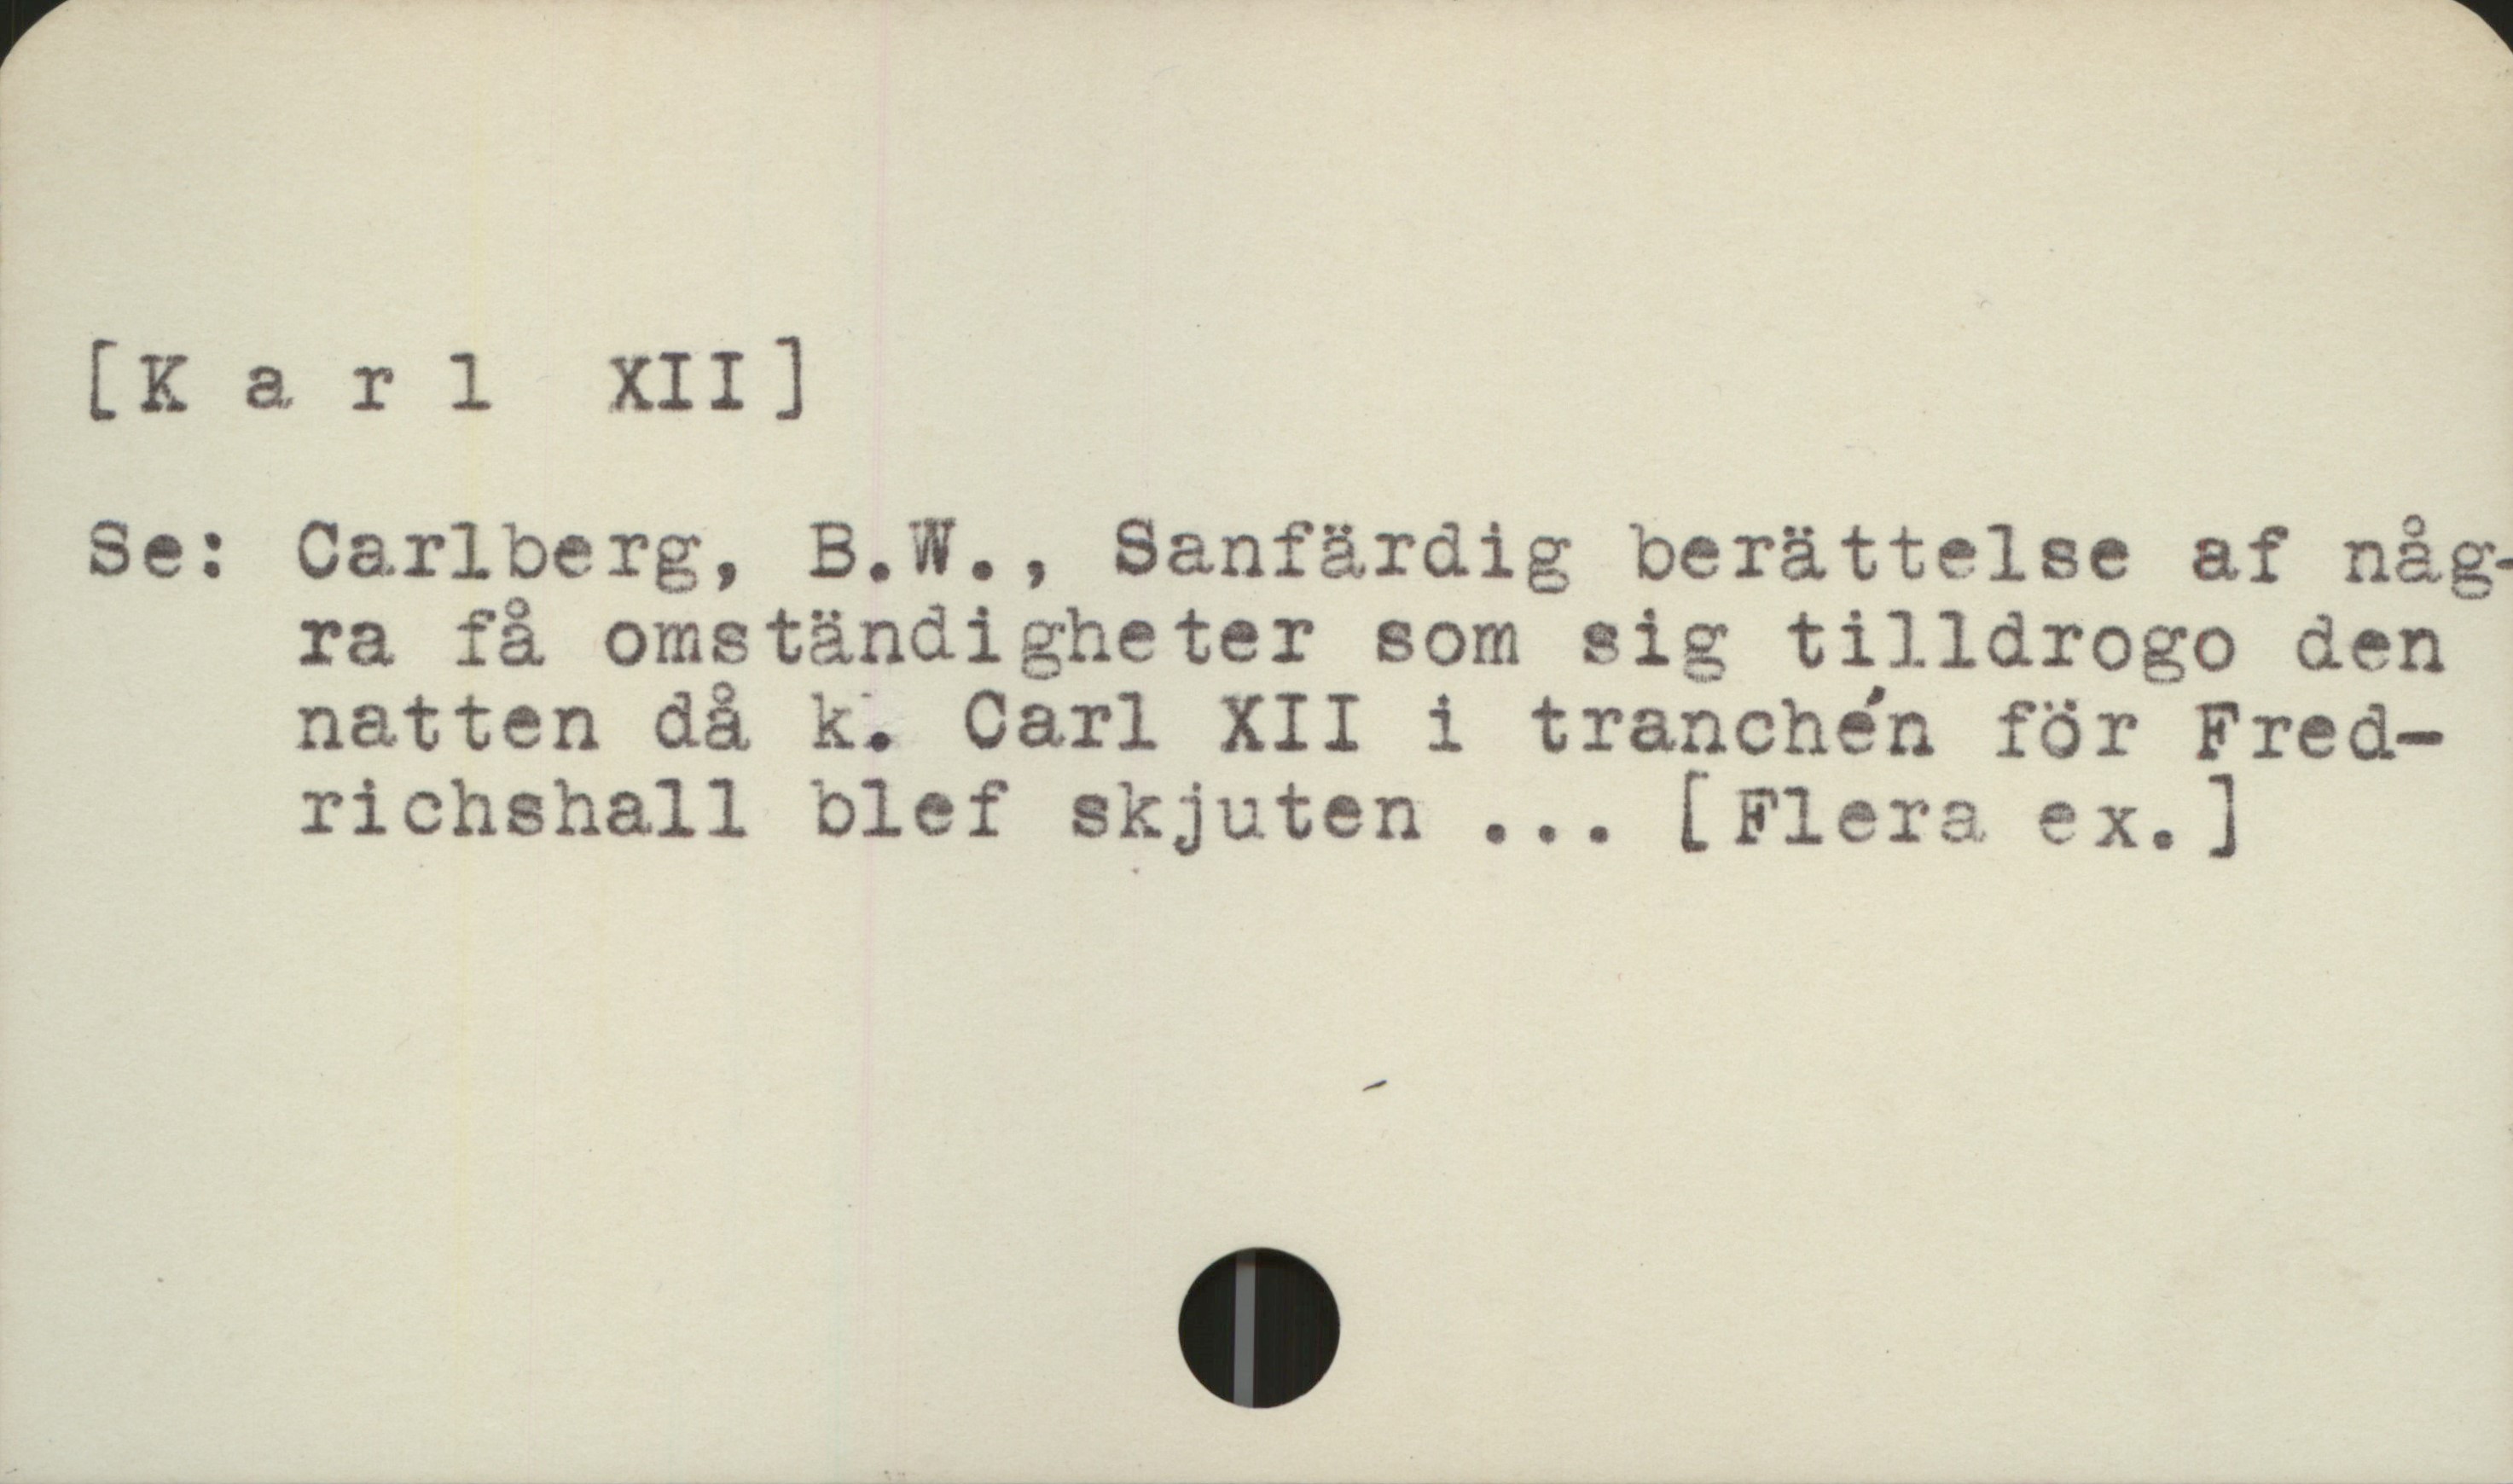  [Karl XII]

Se: Carlberg, B.W., Sanf&rdig berättelse af någ.
ra få omständigheter som sig tilldrogo den
natten då k. Carl XII i tranchen för Fred-
richshall blef skjuten ... [Flera ex.]

